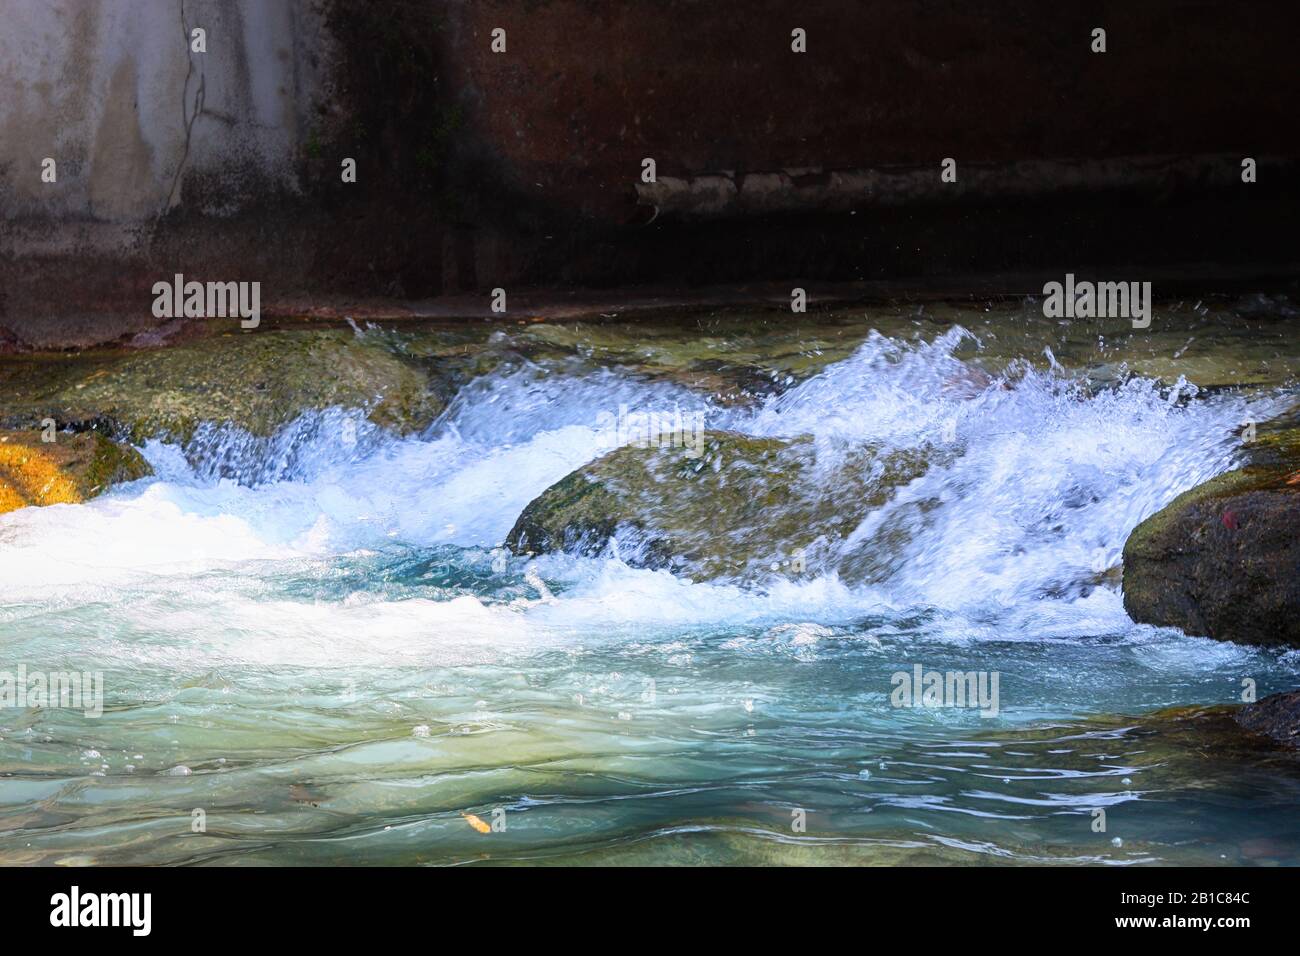 water flow between stones, scenic view of flowing water between stones Stock Photo